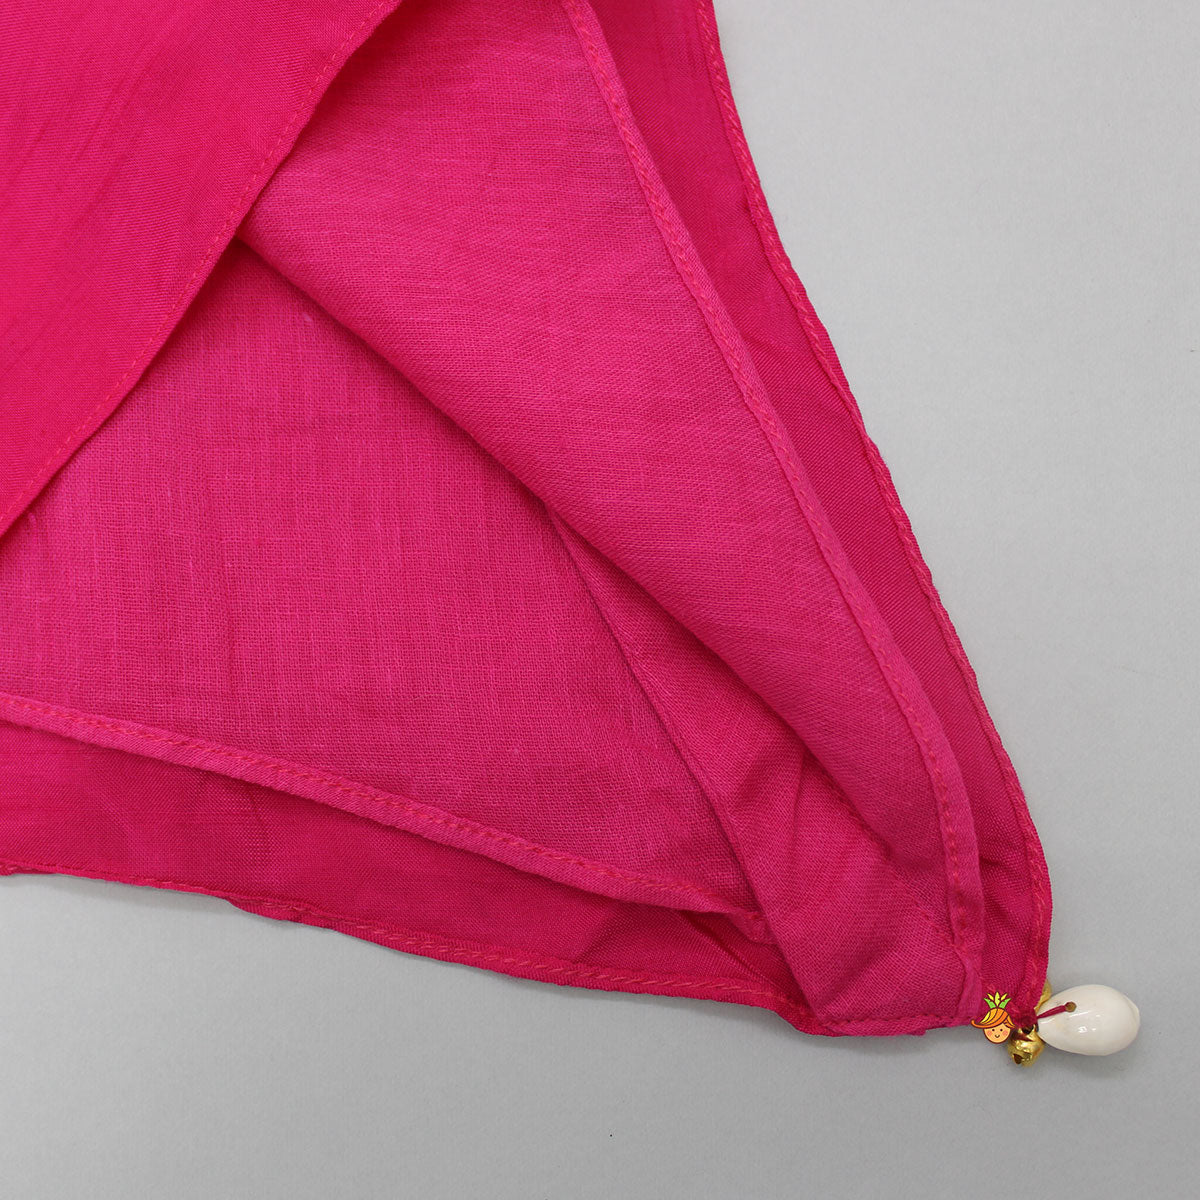 Hanging Tassels Enhanced Pink Top And Shibori Printed Dhoti